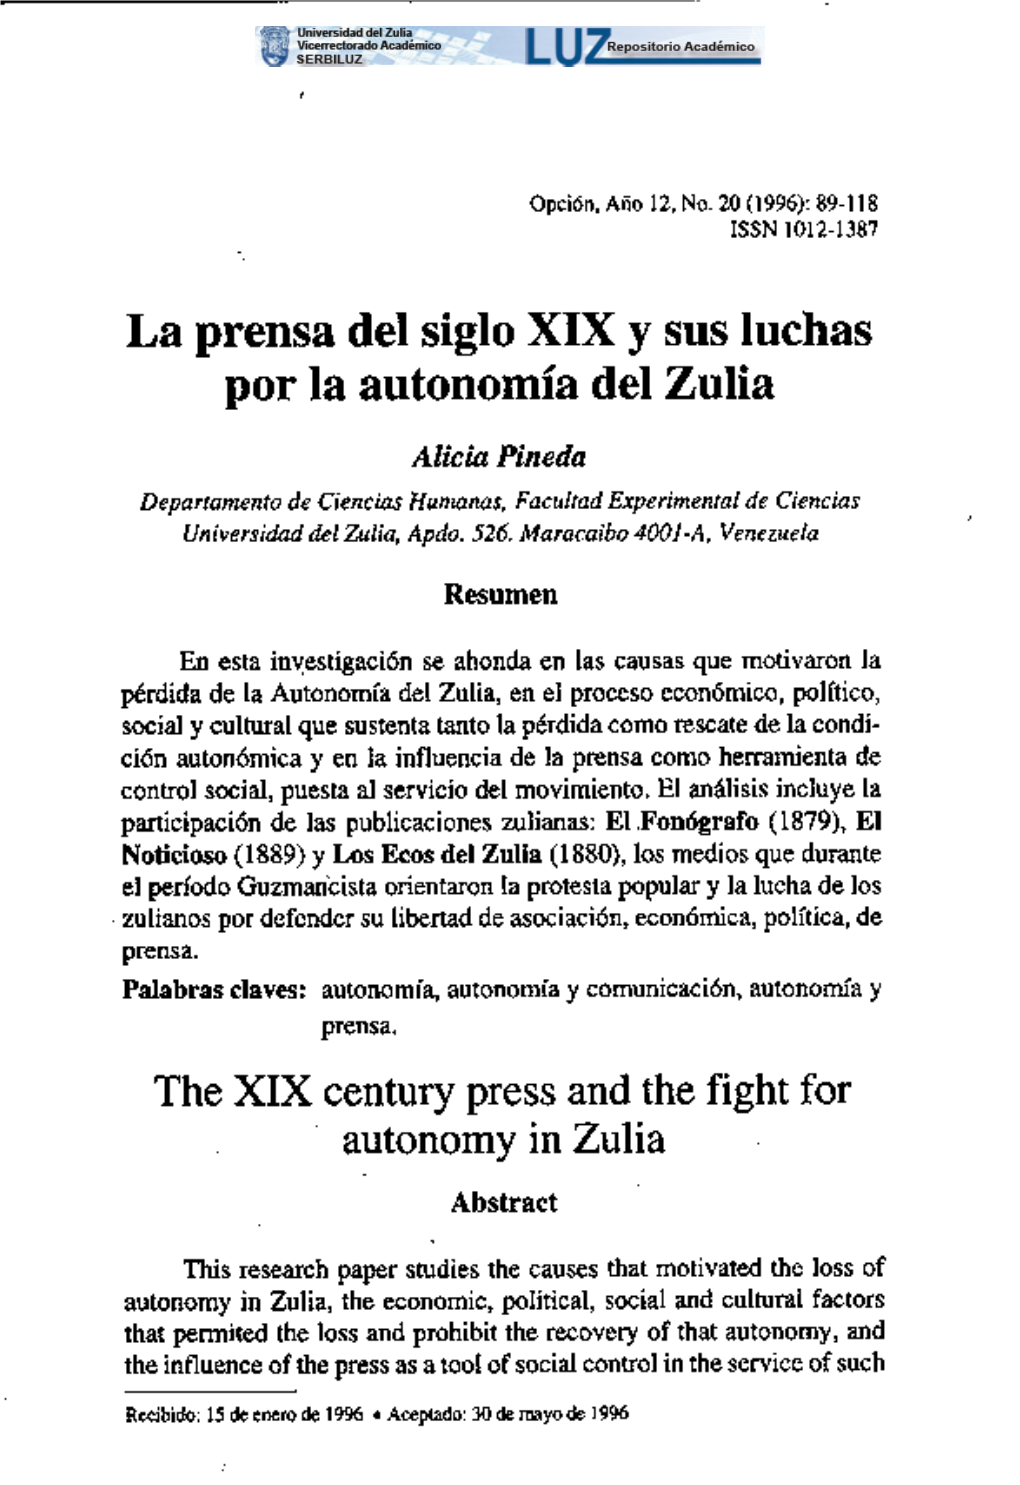 La Prensa Del Siglo XIX Y Sus Luchas Por La Autonomía Del Zulia